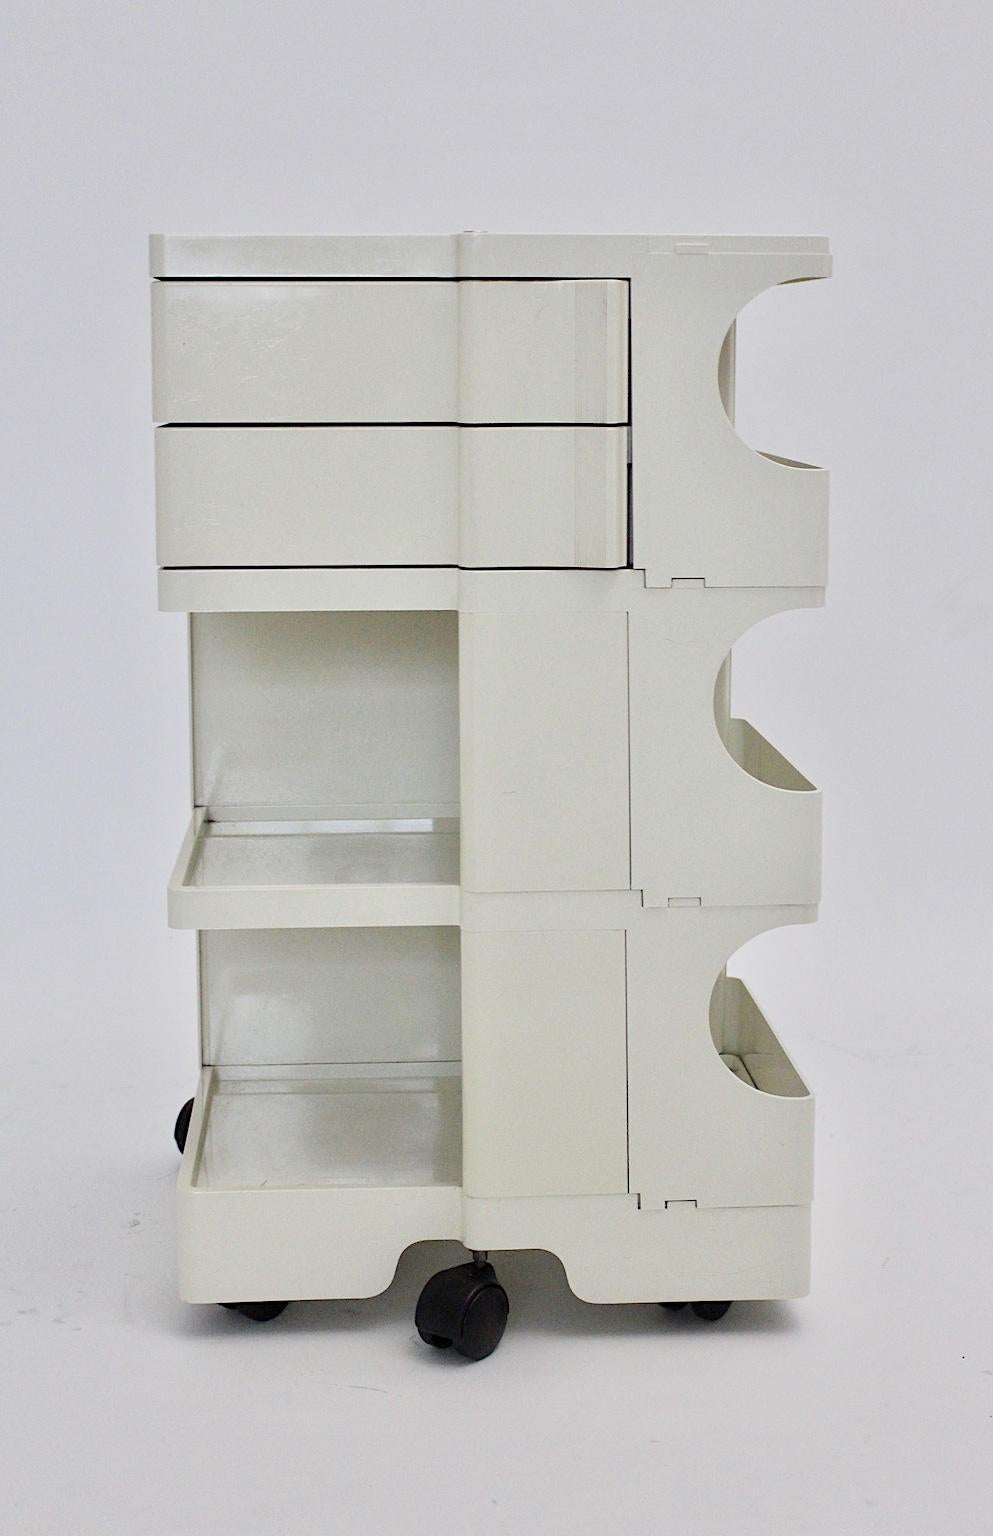 Un conteneur de stockage portable blanc vintage de 3 hauteurs, qui a été conçu par Joe Colombo en 1969, Italie et exécuté par Bieffeplast, Padoue, Italie. Le conteneur de stockage Joe Colombo Boby blanc est fabriqué en plastique blanc et comporte 2